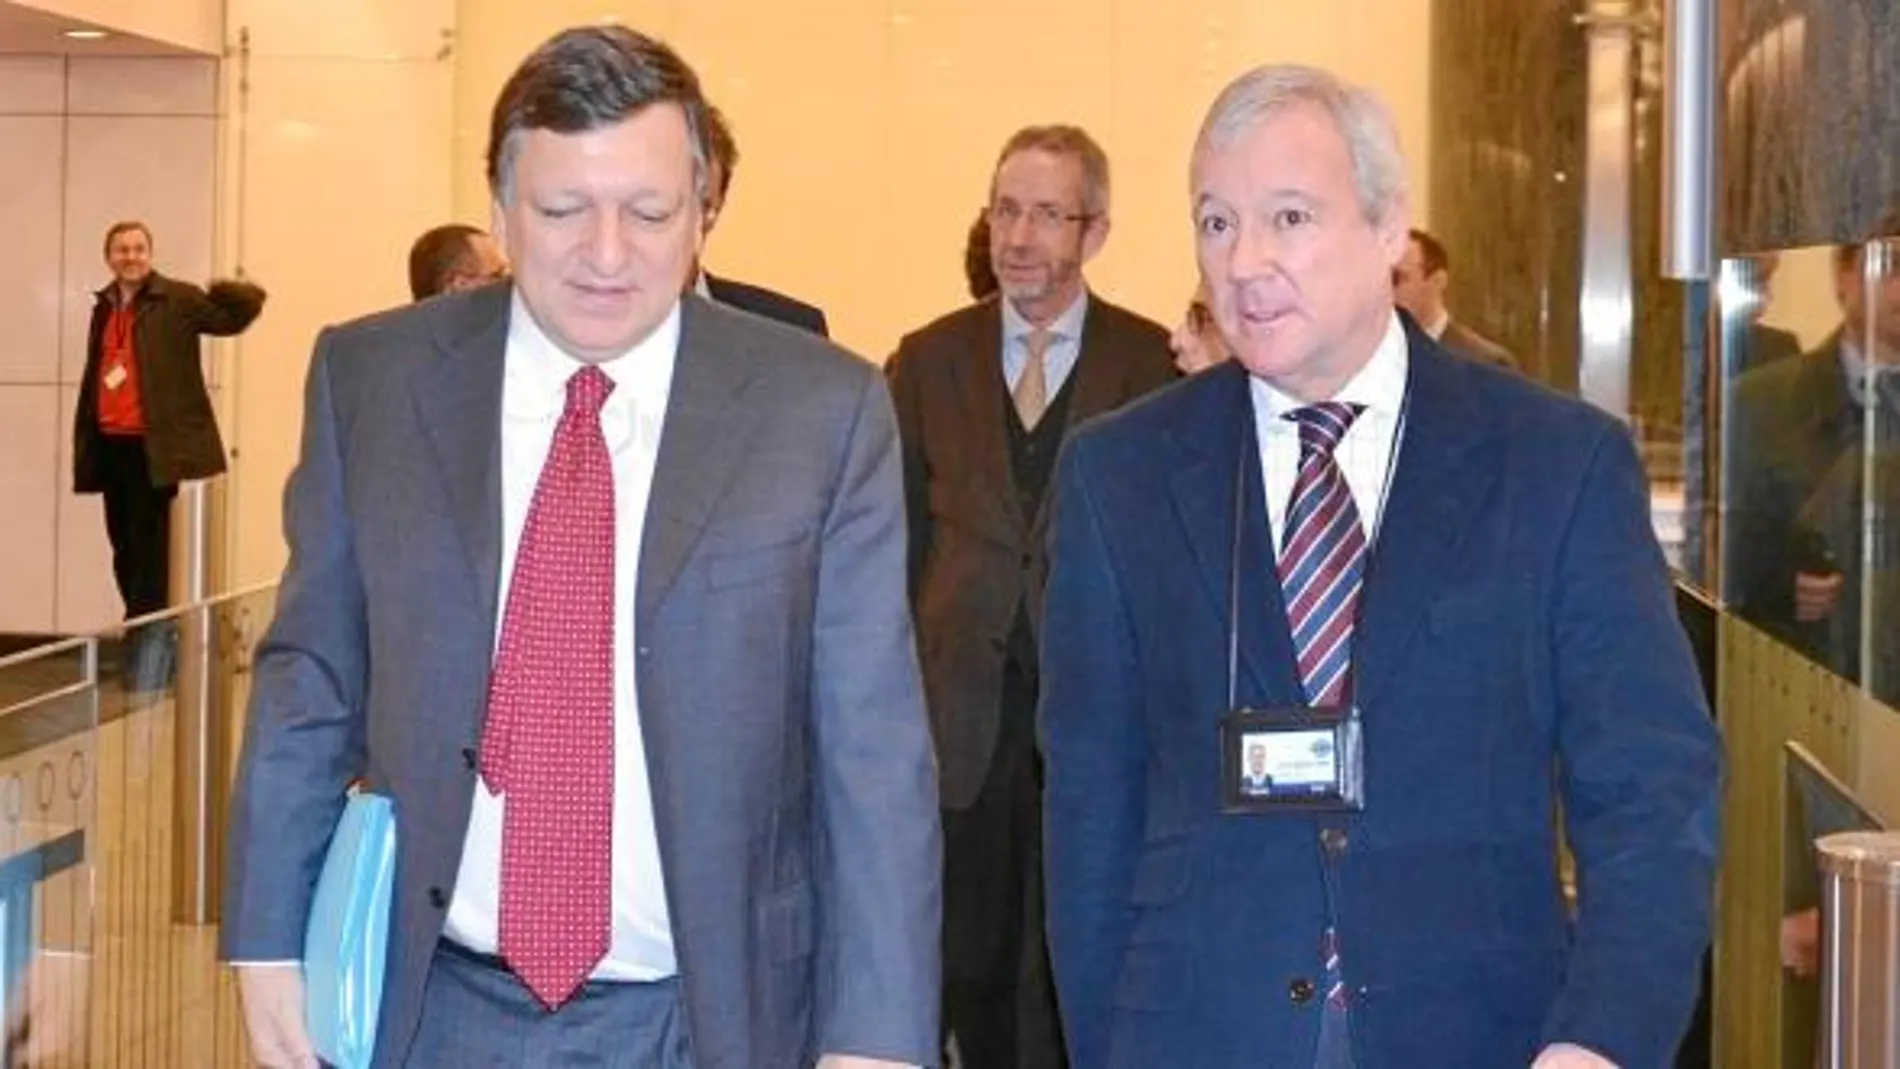 Valcárcel logra de Barroso ayudas europeas contra el paro juvenil